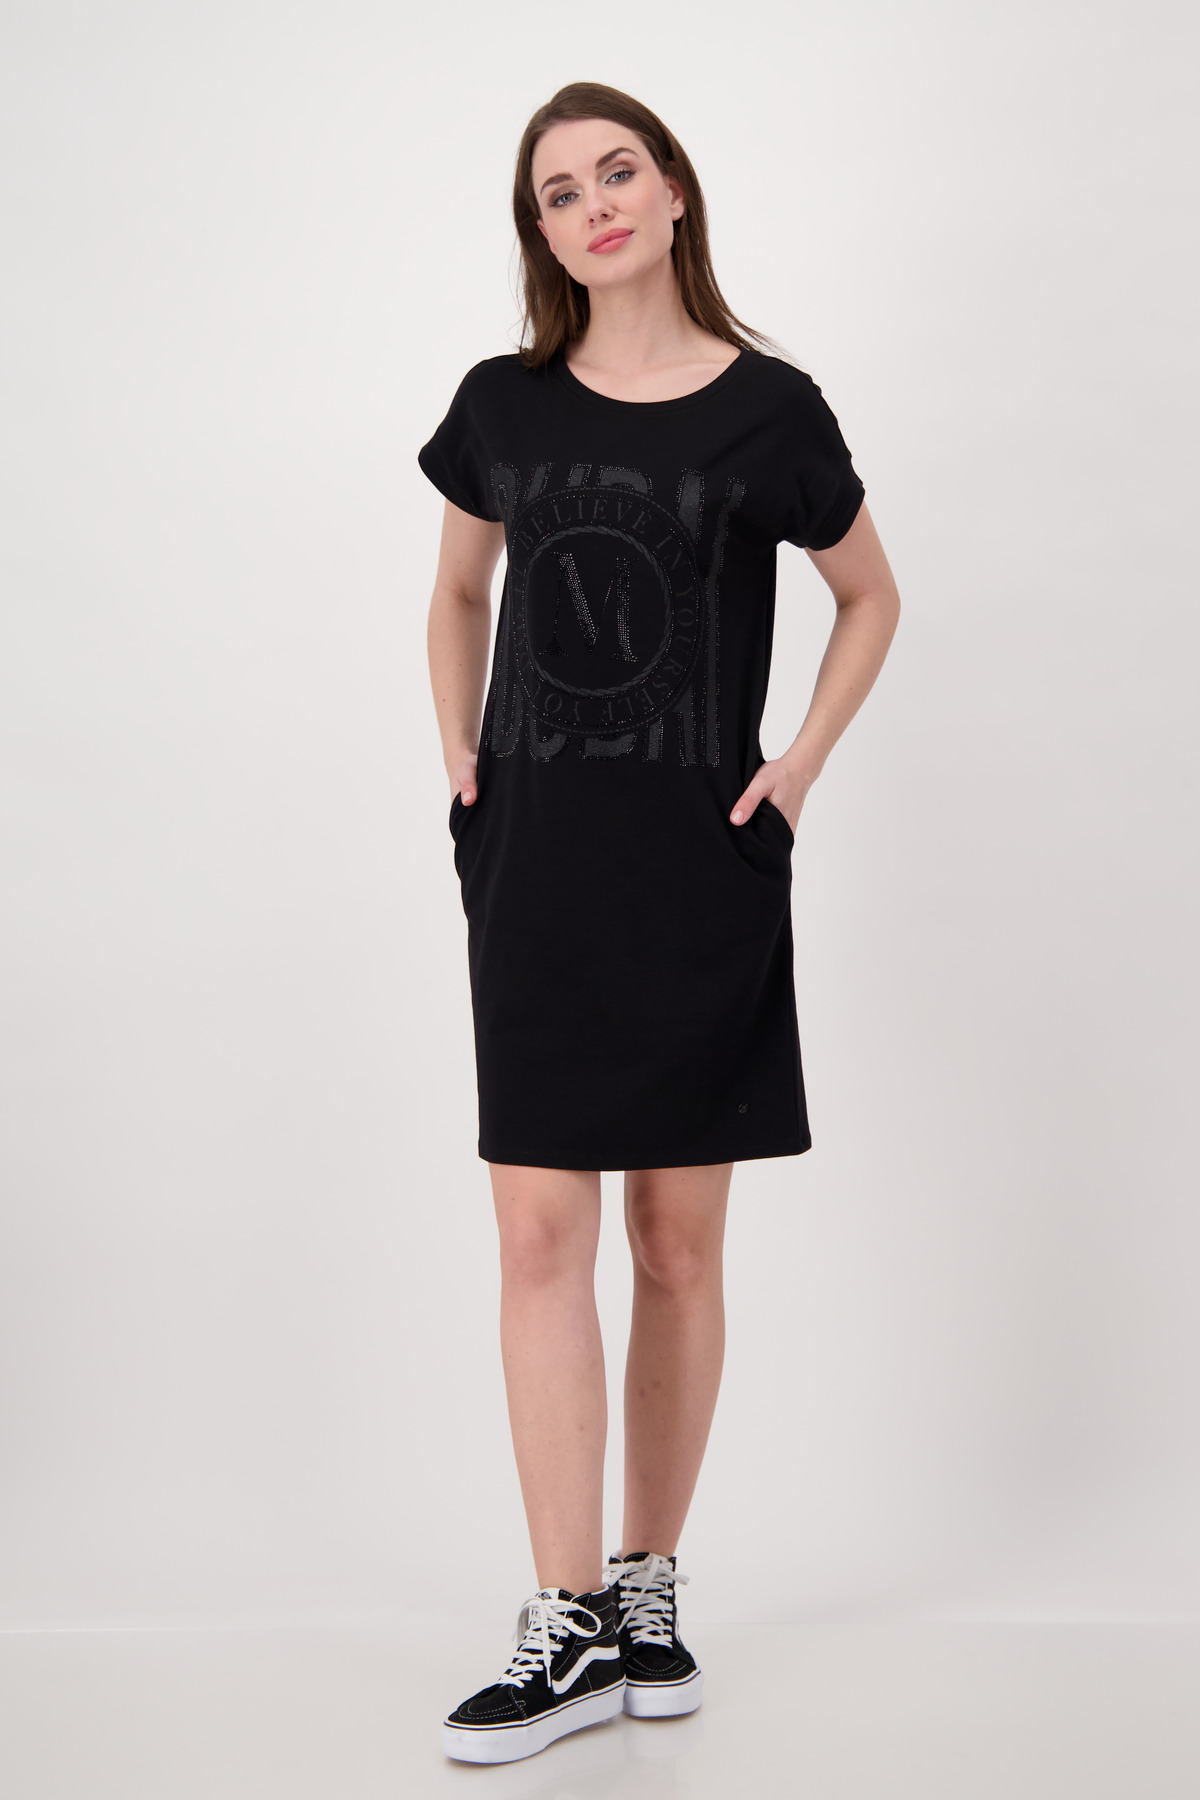 Mode Shop schwarz - Hartmann Monari Kleid,